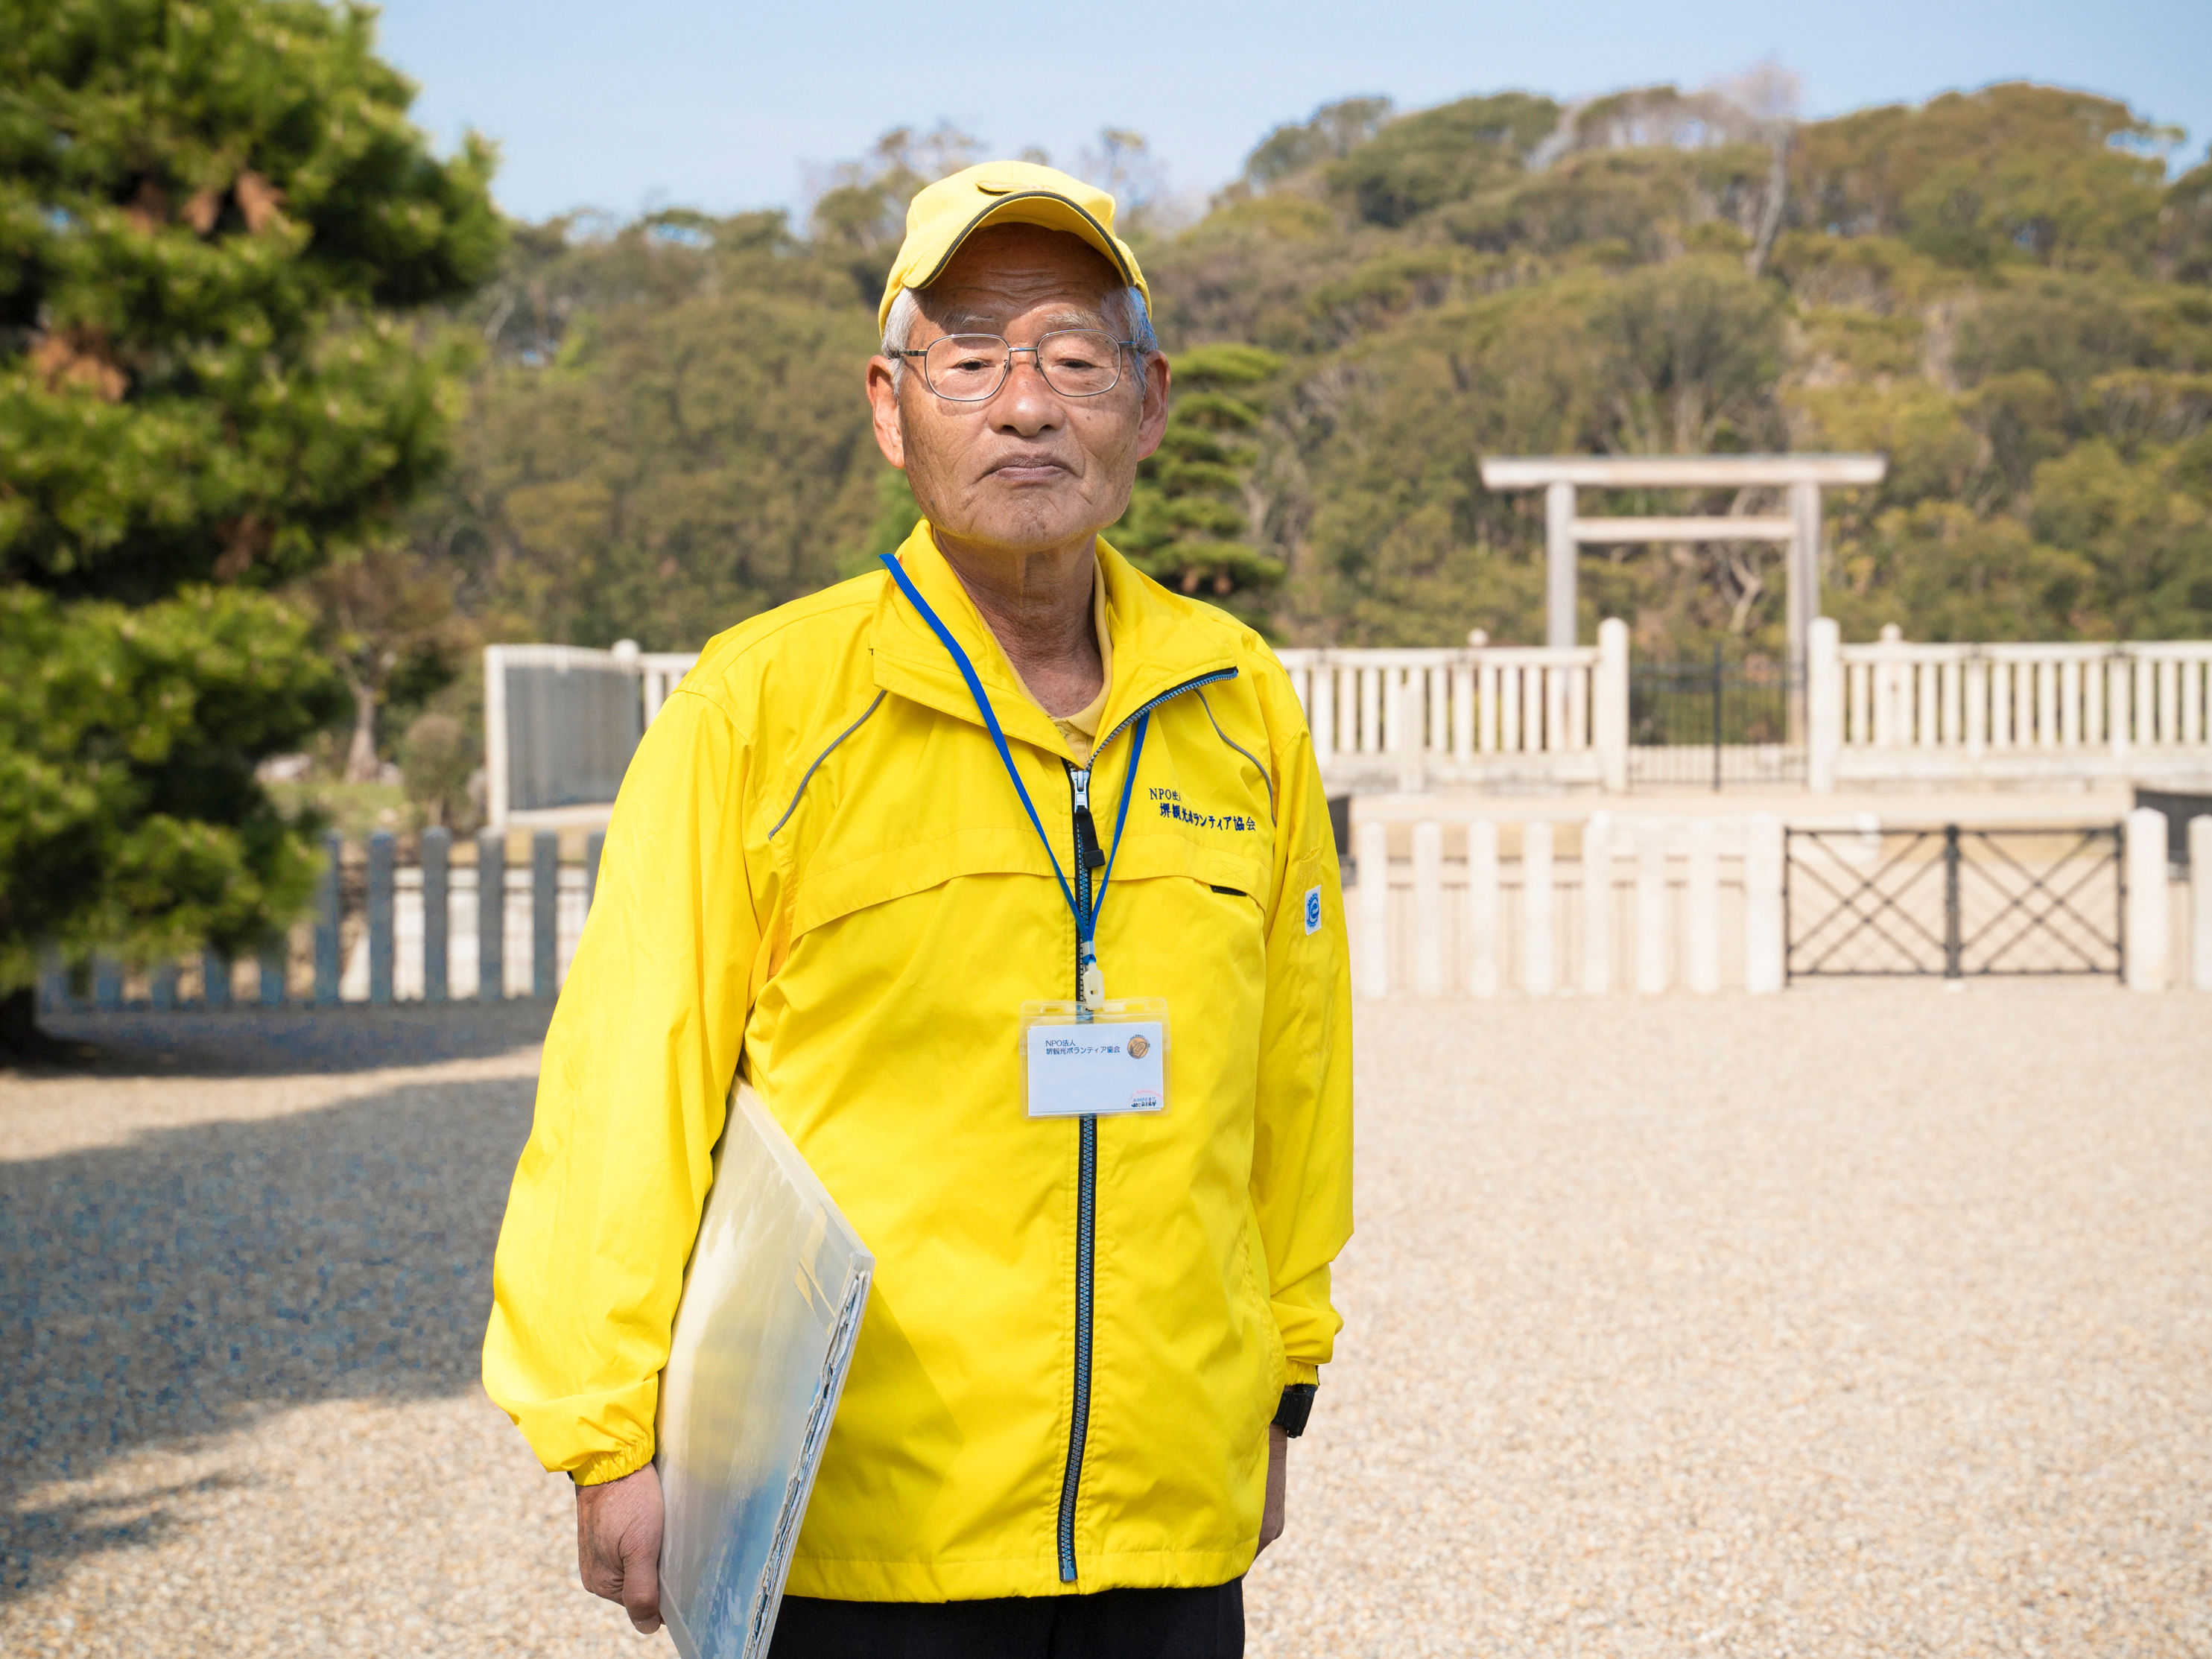 义务导游都是平均年龄超过70岁的本地人。标志是小黄帽和防风夹克